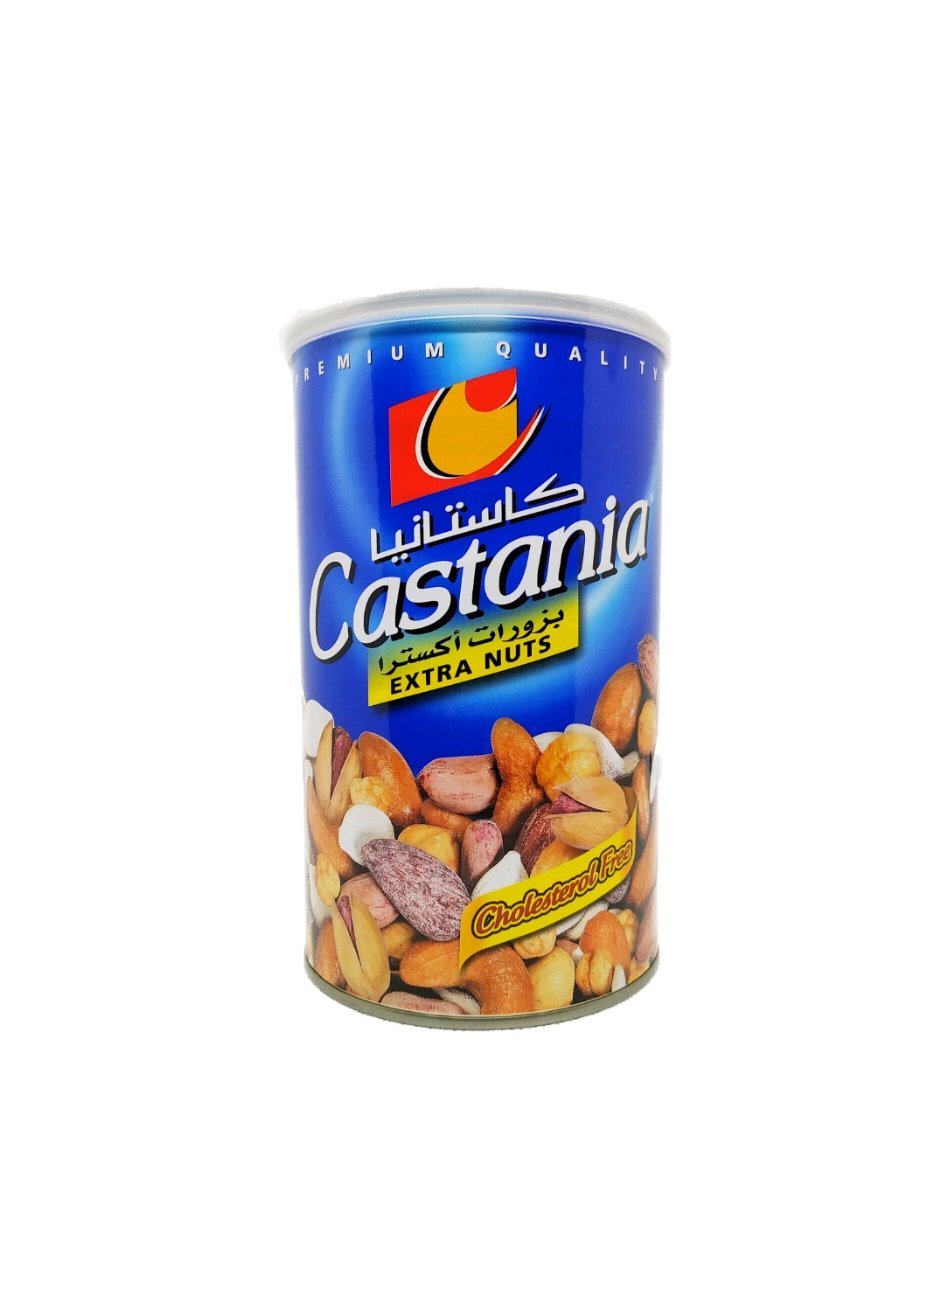 Produits orientaux en ligne : Castania - extra nuts